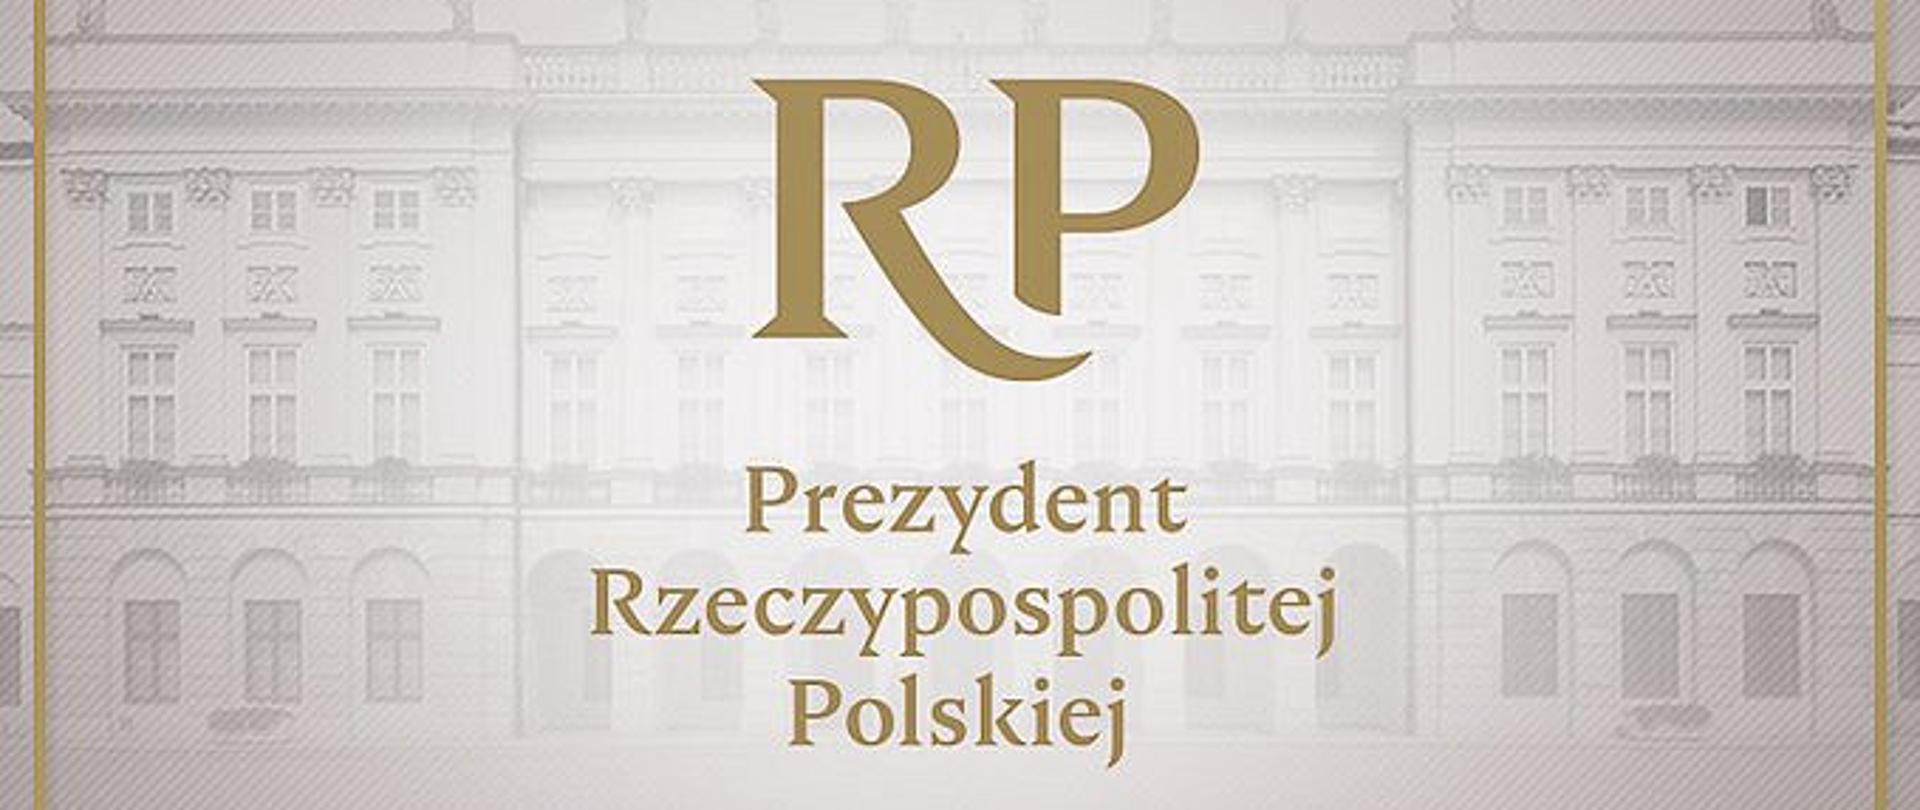 Prezydent Rzeczypospolitej Polskiej